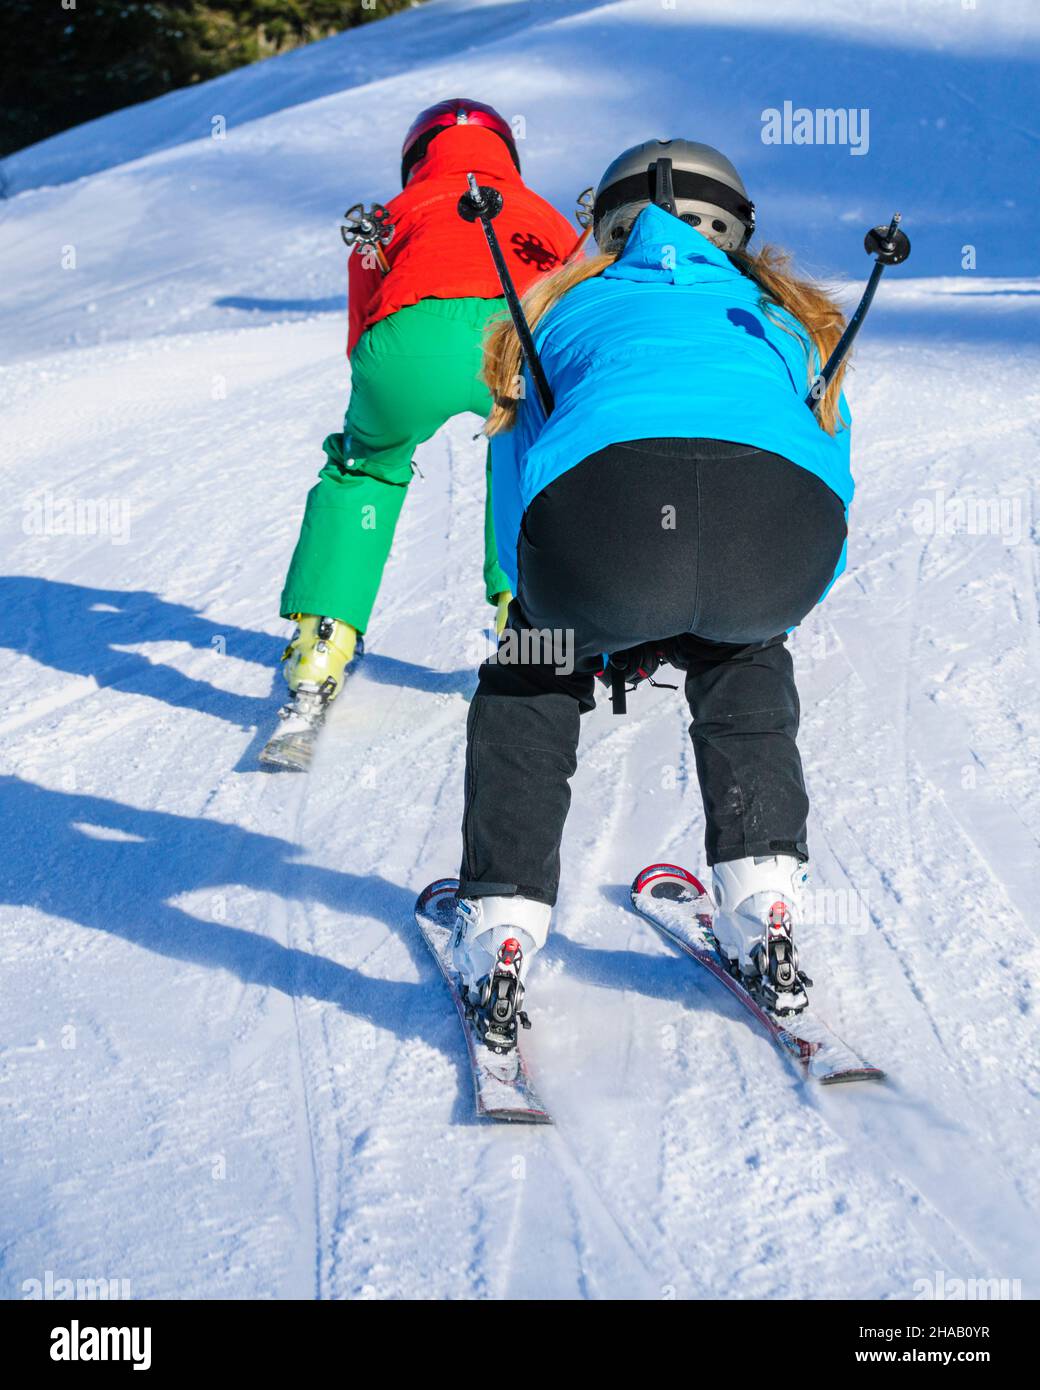 Les jeunes skient ensemble sur une pente bien préparée Banque D'Images